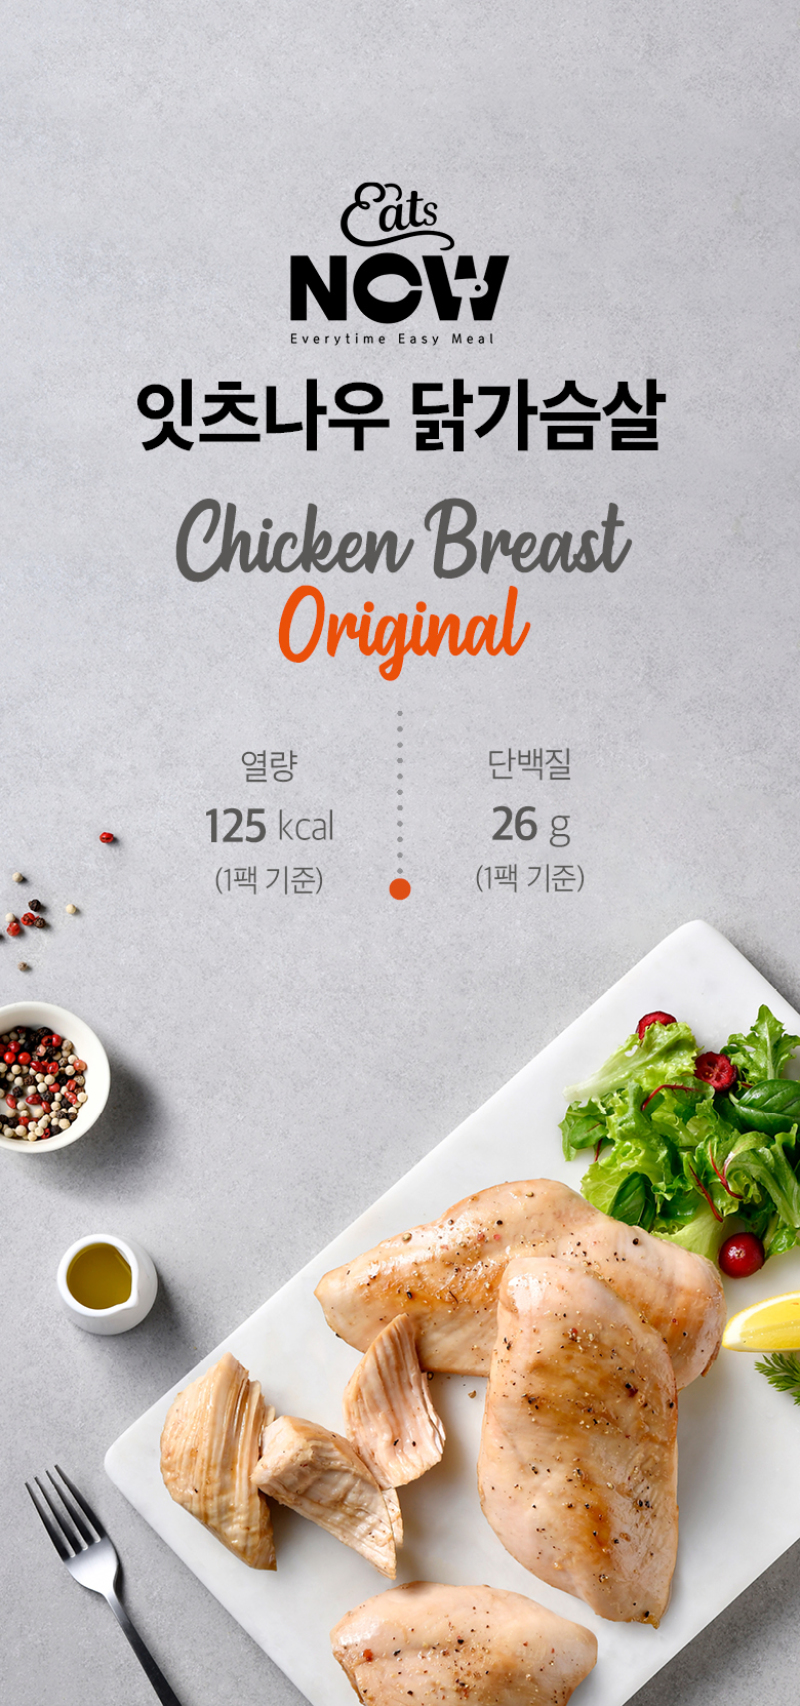 韓國食品-[잇츠나우] 소스닭가슴살 [오리지널] 100g